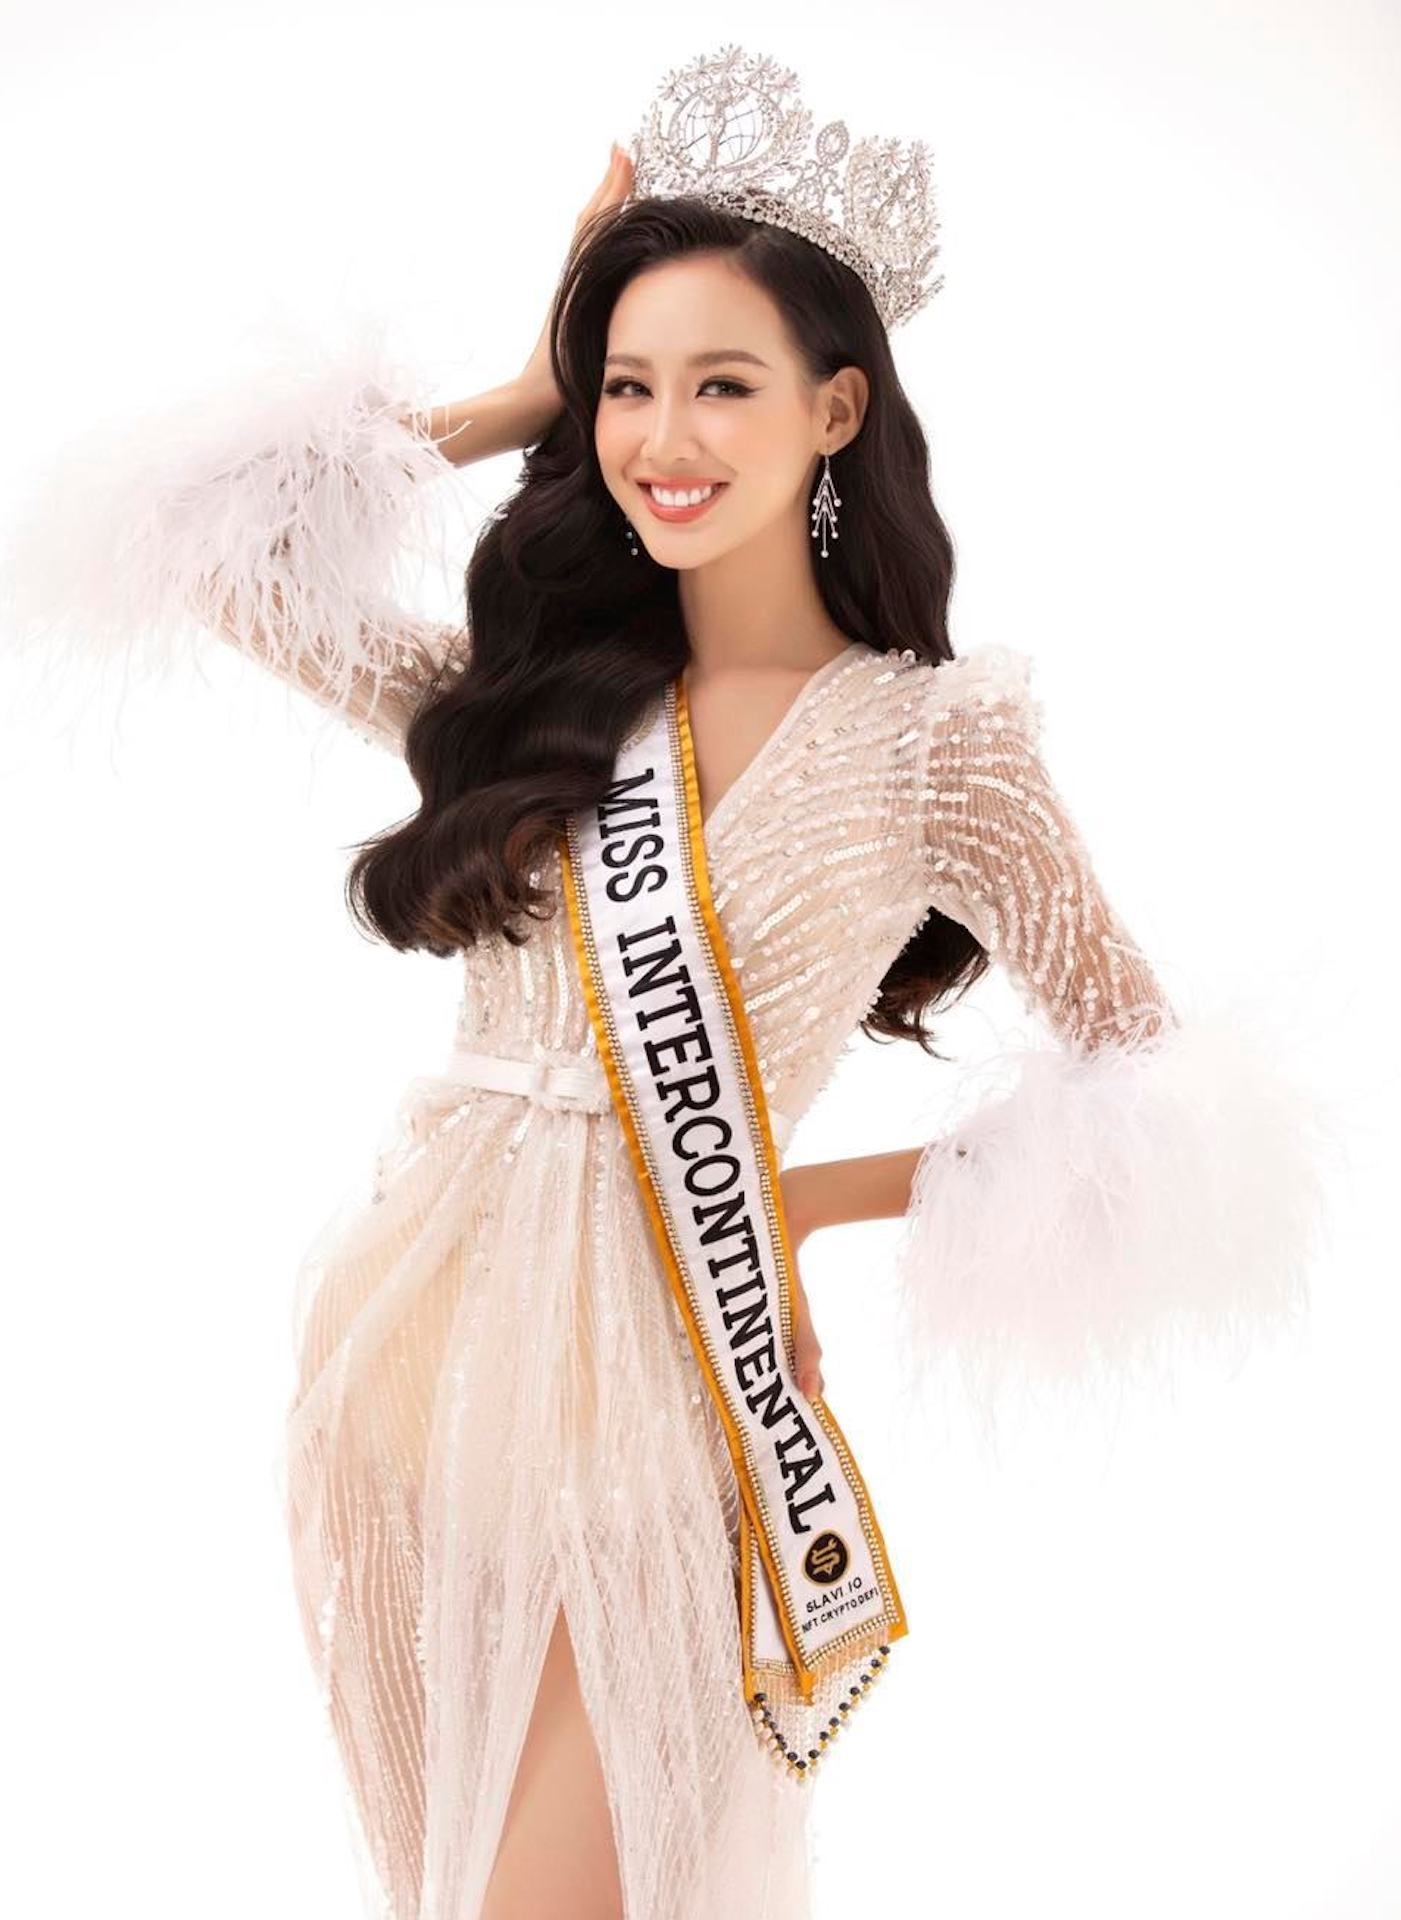 Hoa hậu Bảo Ngọc thay đổi ra sao sau nửa năm đăng quang Miss Intercontinental? - Ảnh 1.